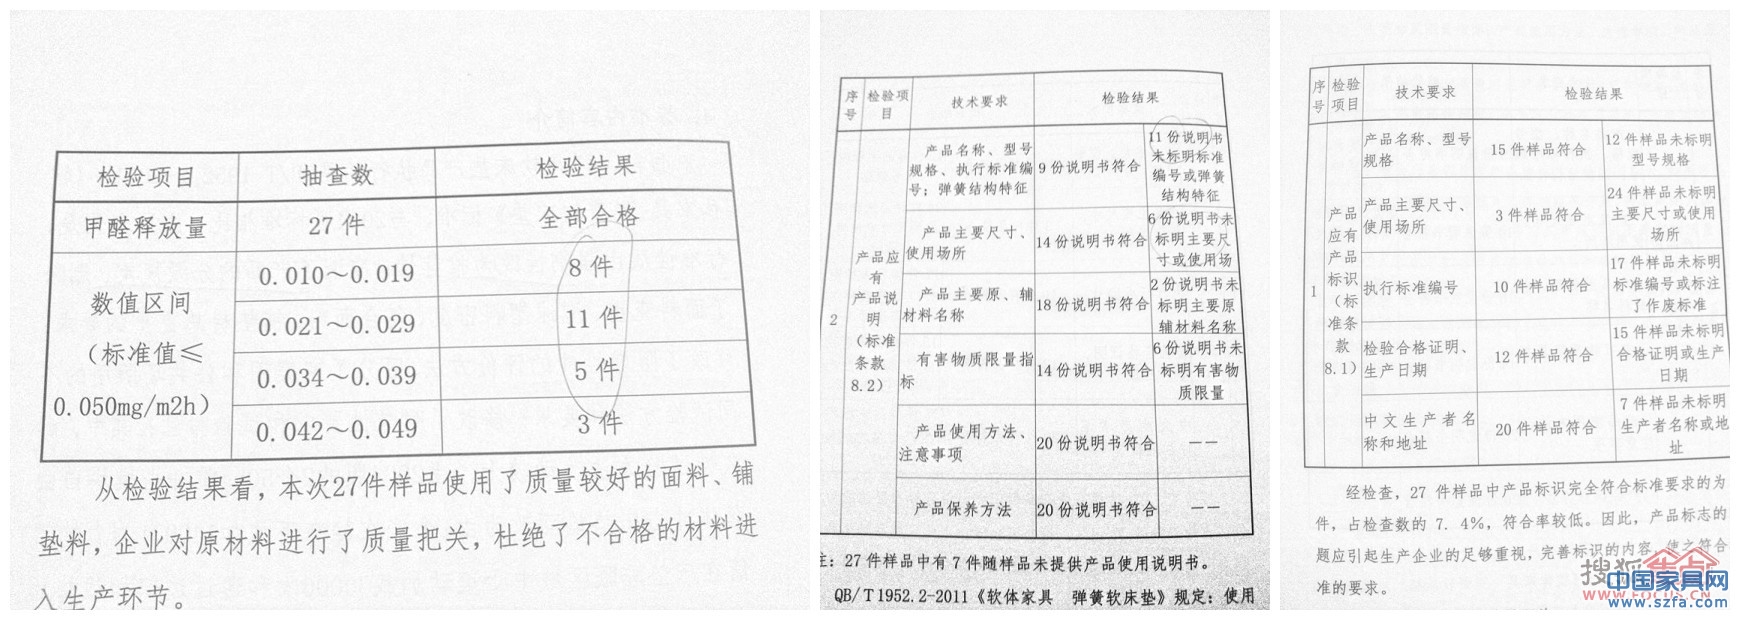 中国家具行业弹簧软床垫生产企业质量状况调查报告内容